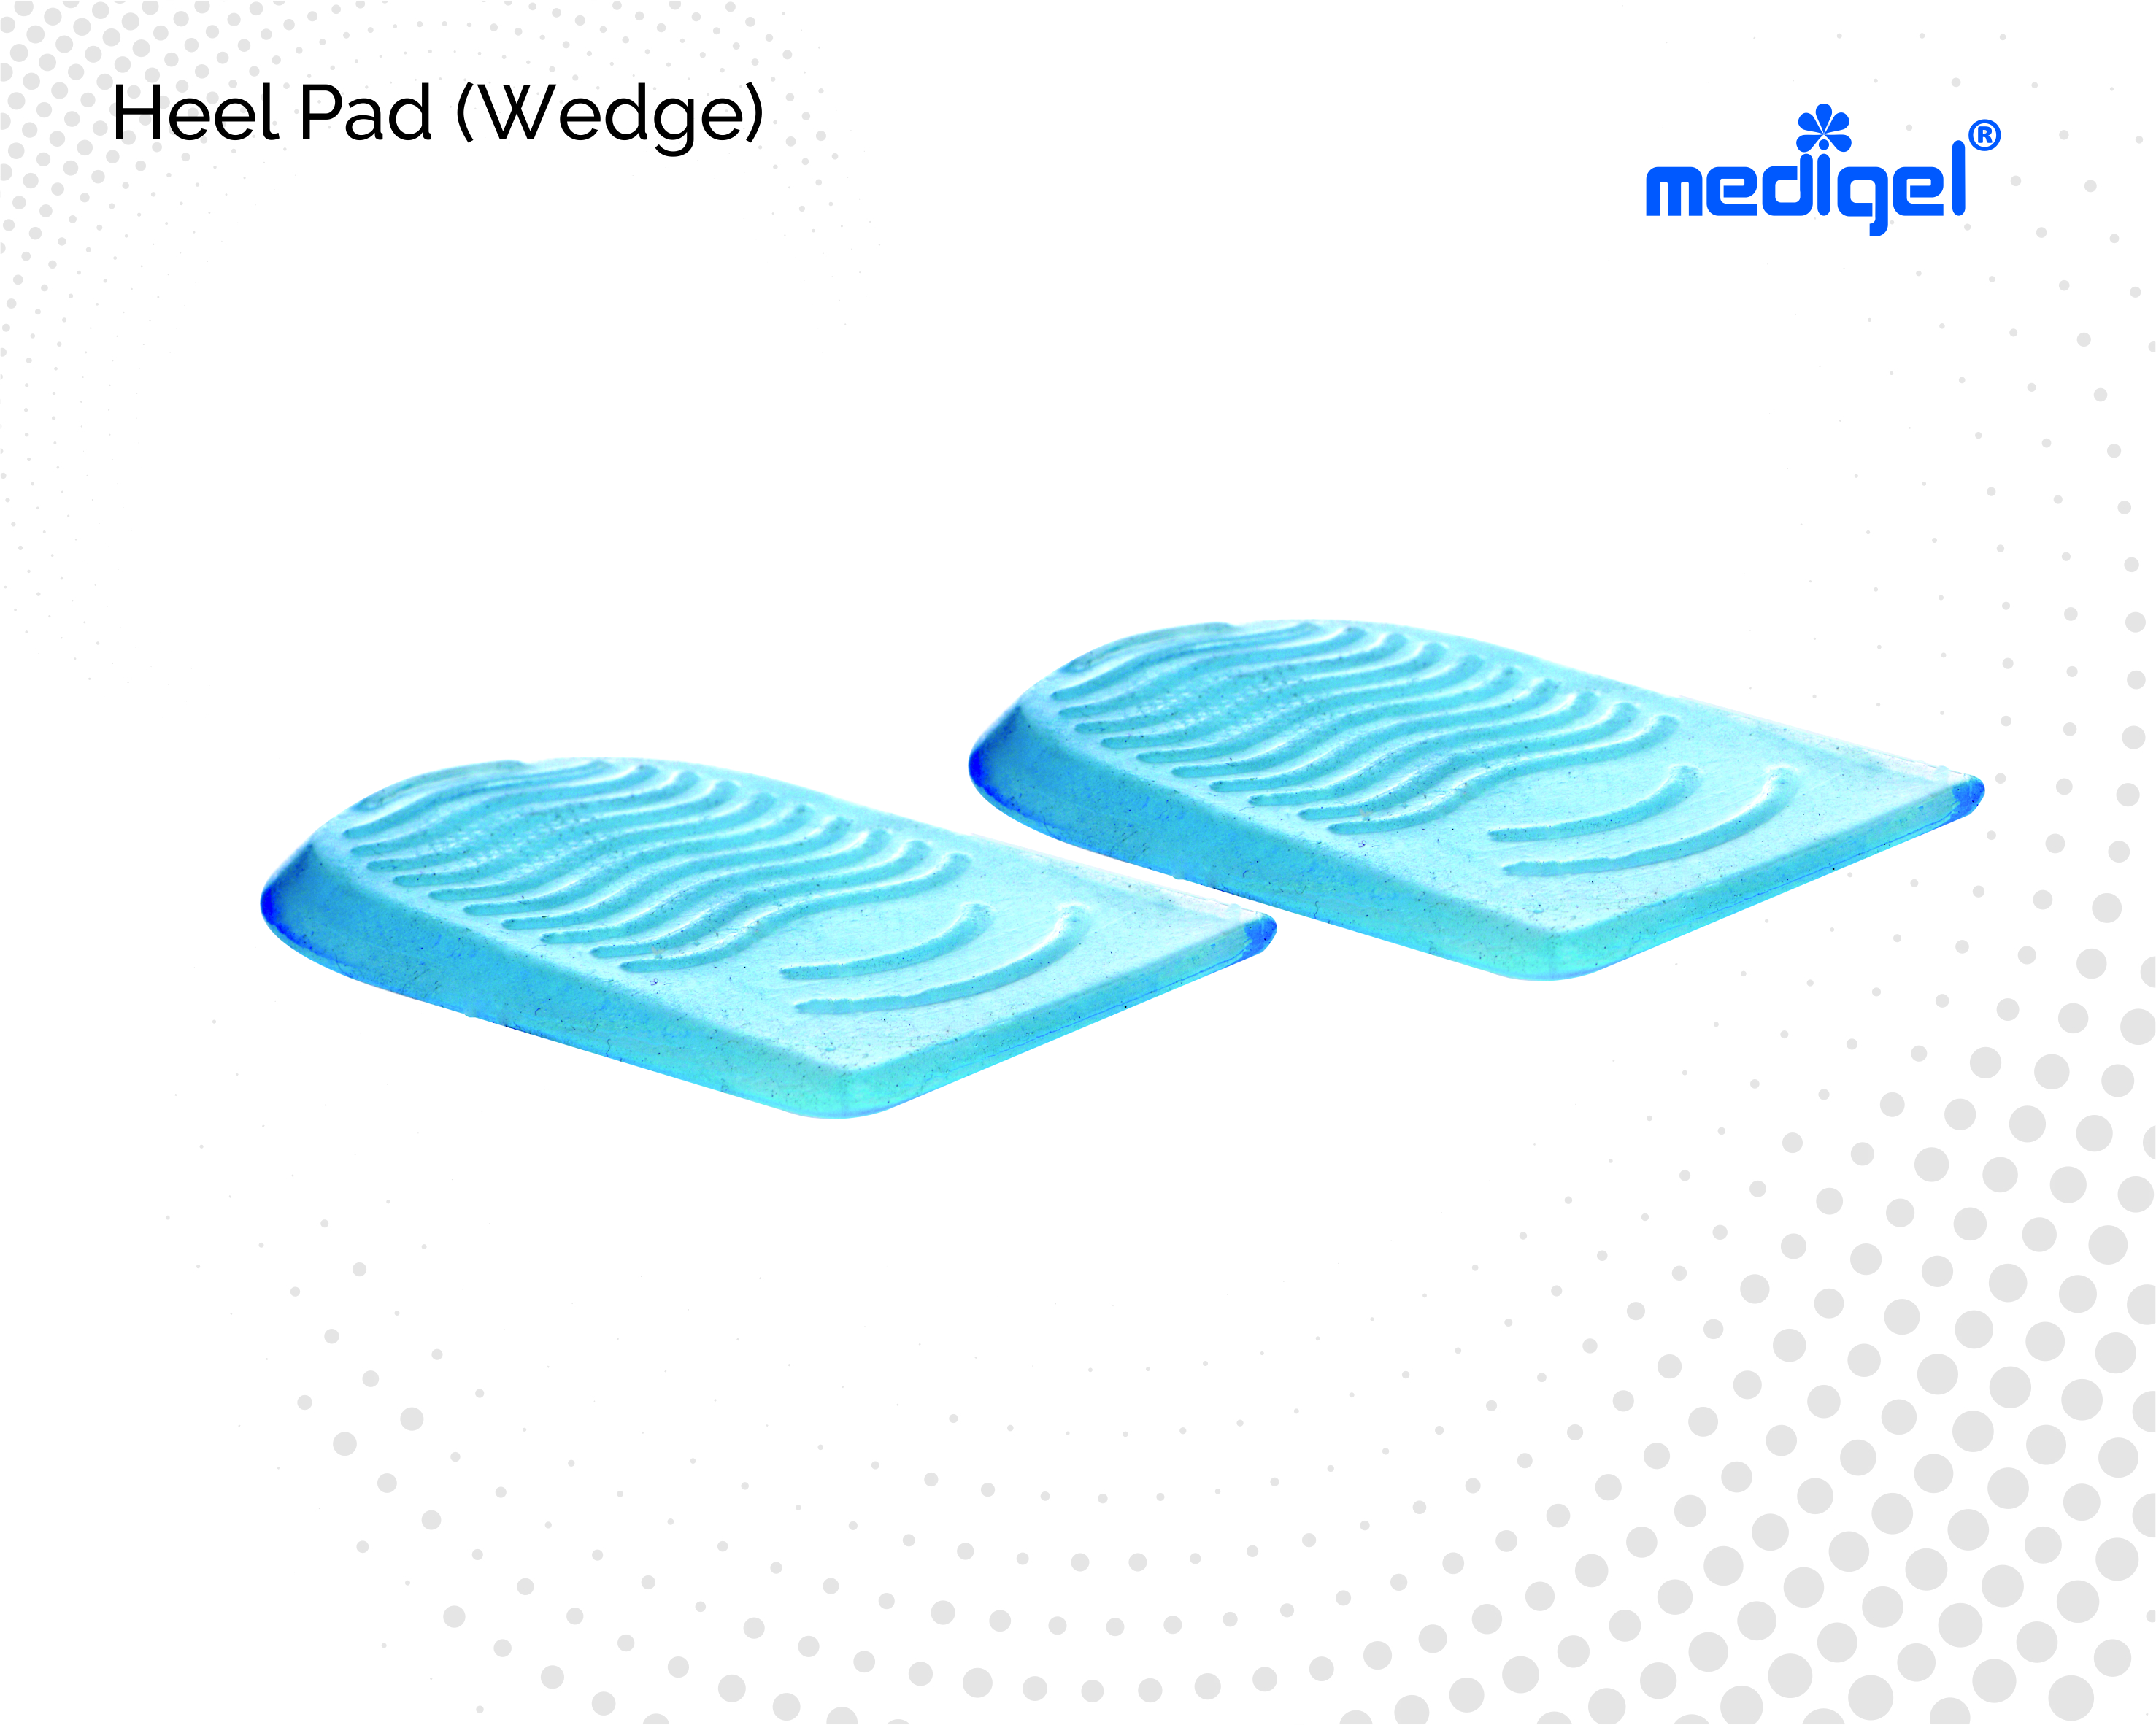 Medigel® Heel Pad Wedge